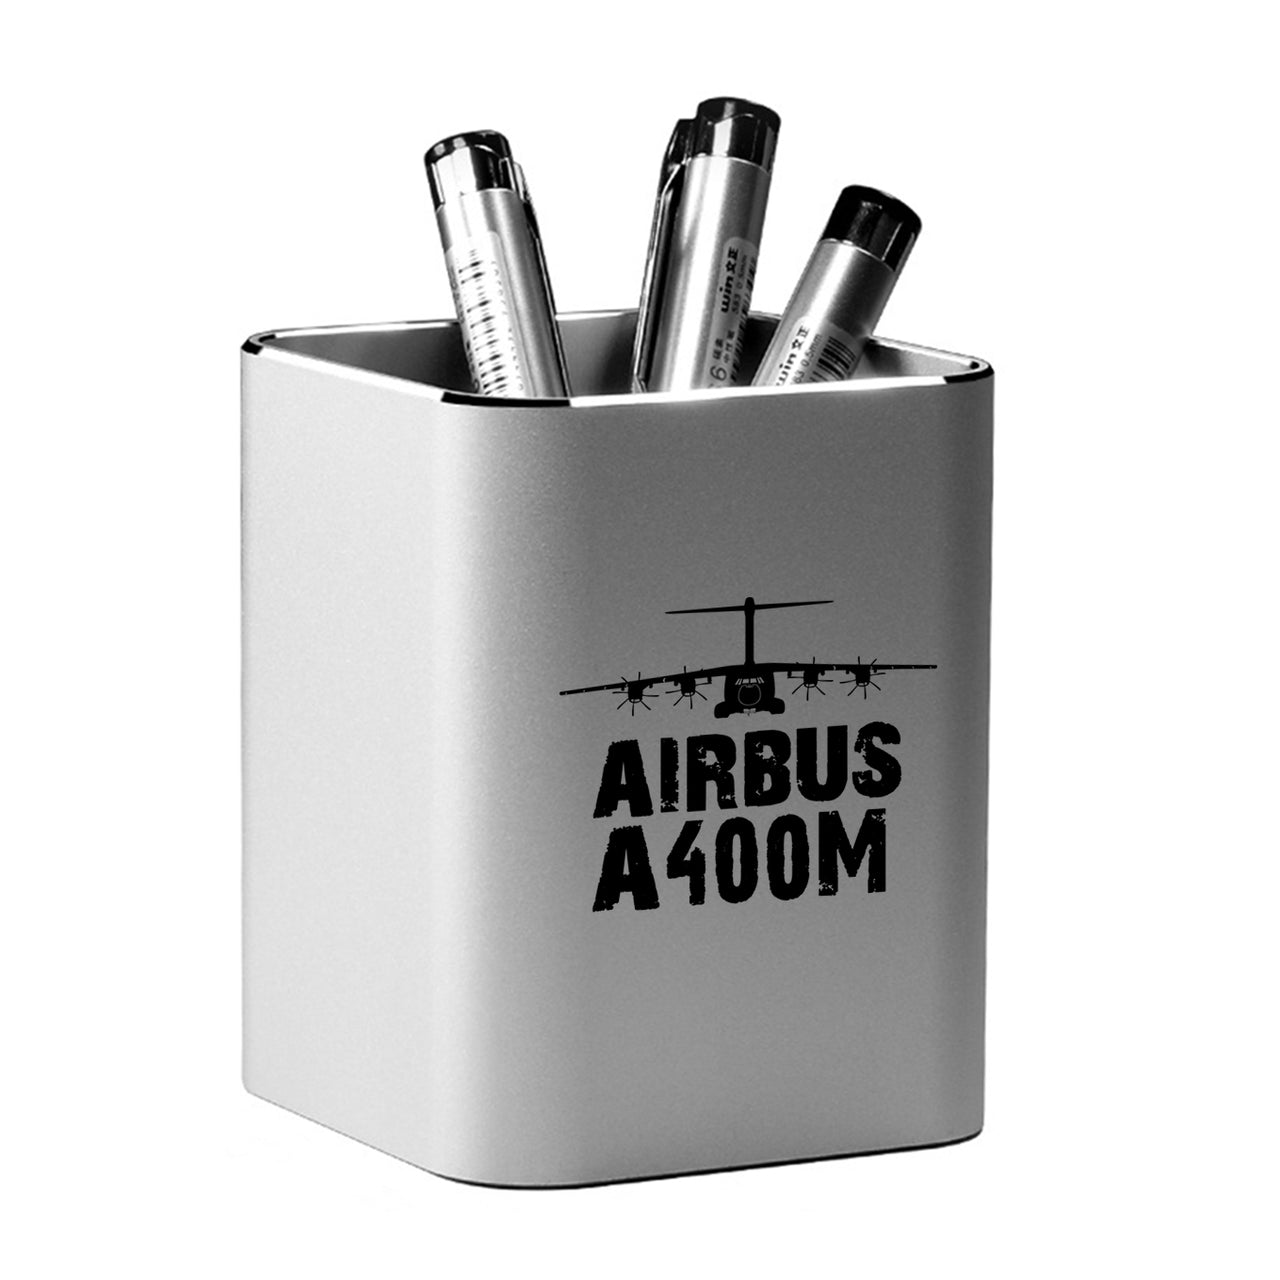 Airbus A400M & Plane Designed Aluminium Alloy Pen Holders